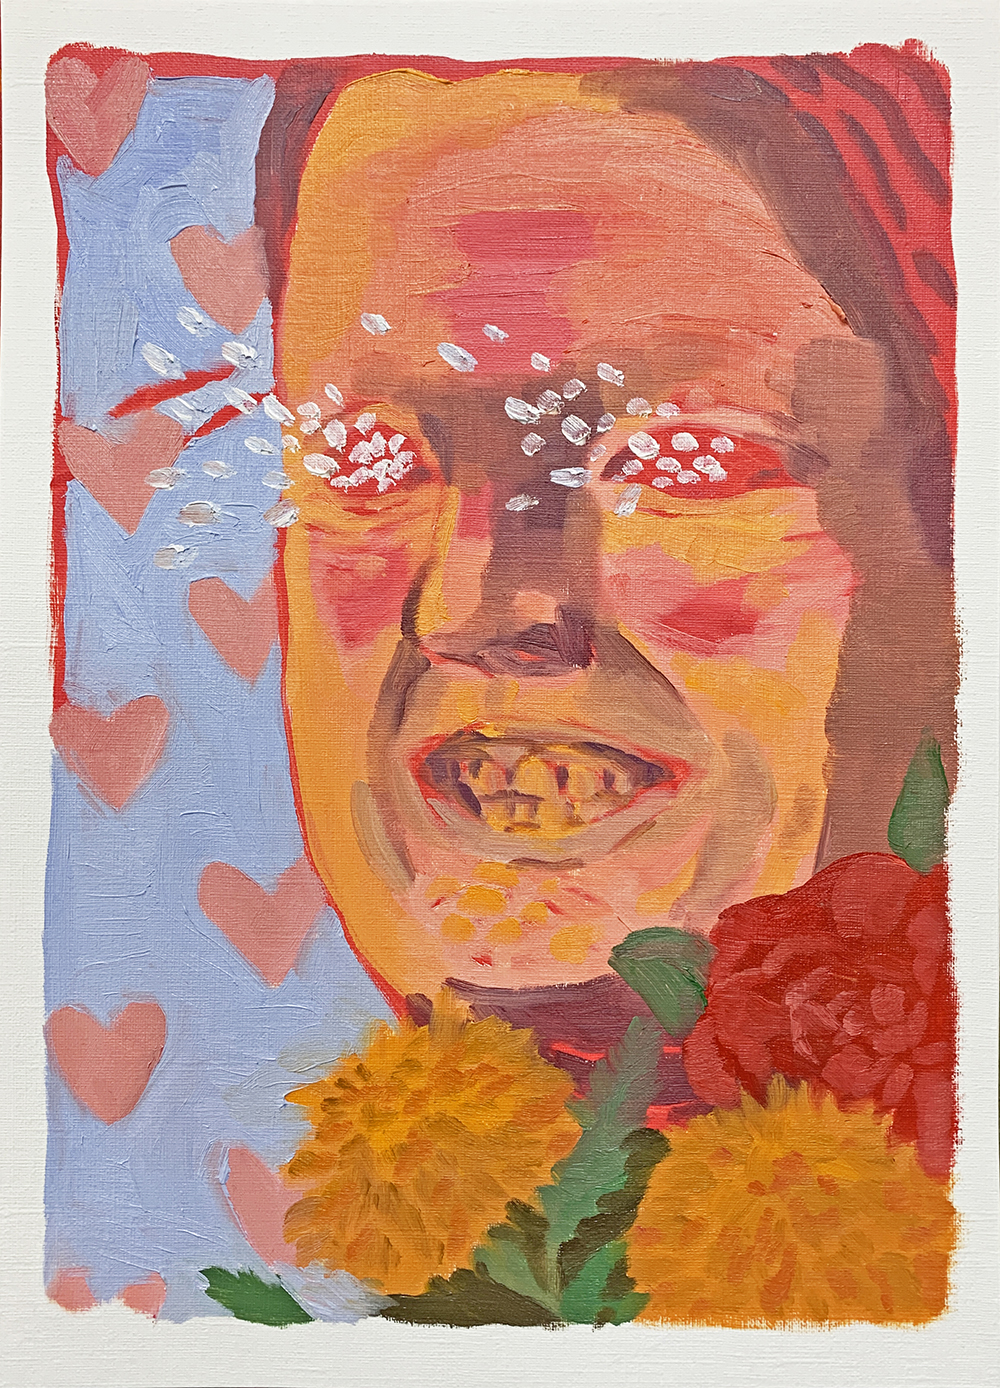 사랑사랑사랑사랑사랑사랑사랑사랑사랑과 꽃꽃꽃과 정말-정-말-정--말-정말- 기뻐하는 사람, 2020, oil on paper, 33cm x 24cm.jpg